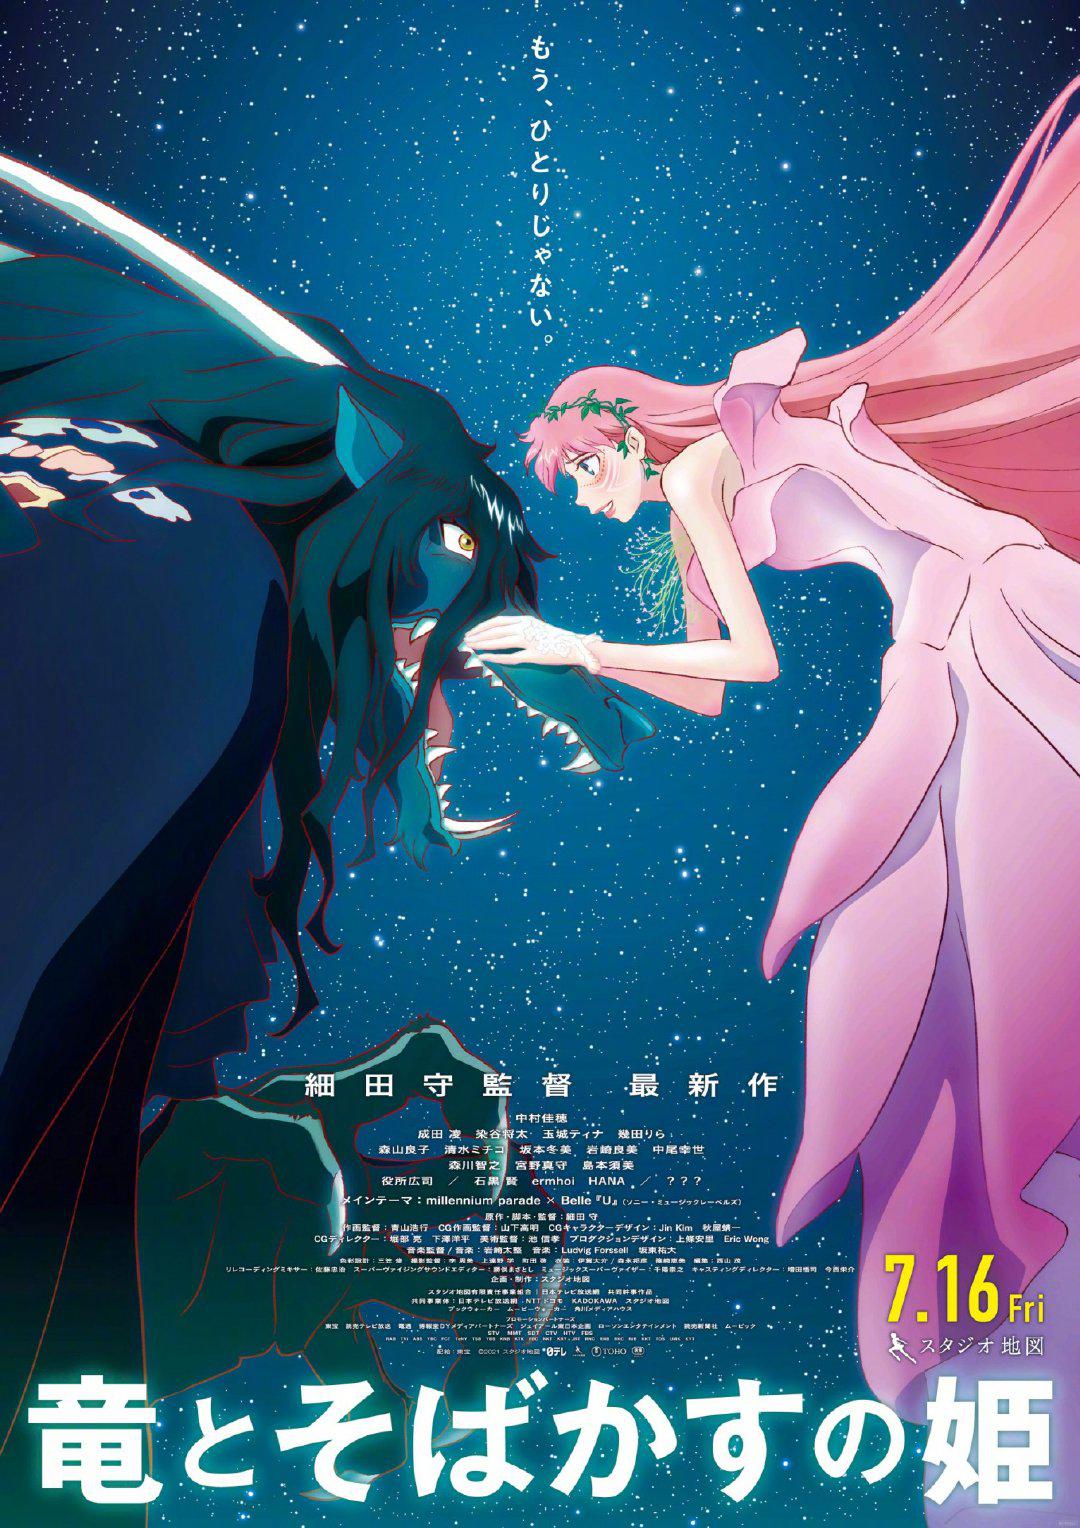 细田守新作《龙和雀斑公主》将在戛纳电影节全球首映